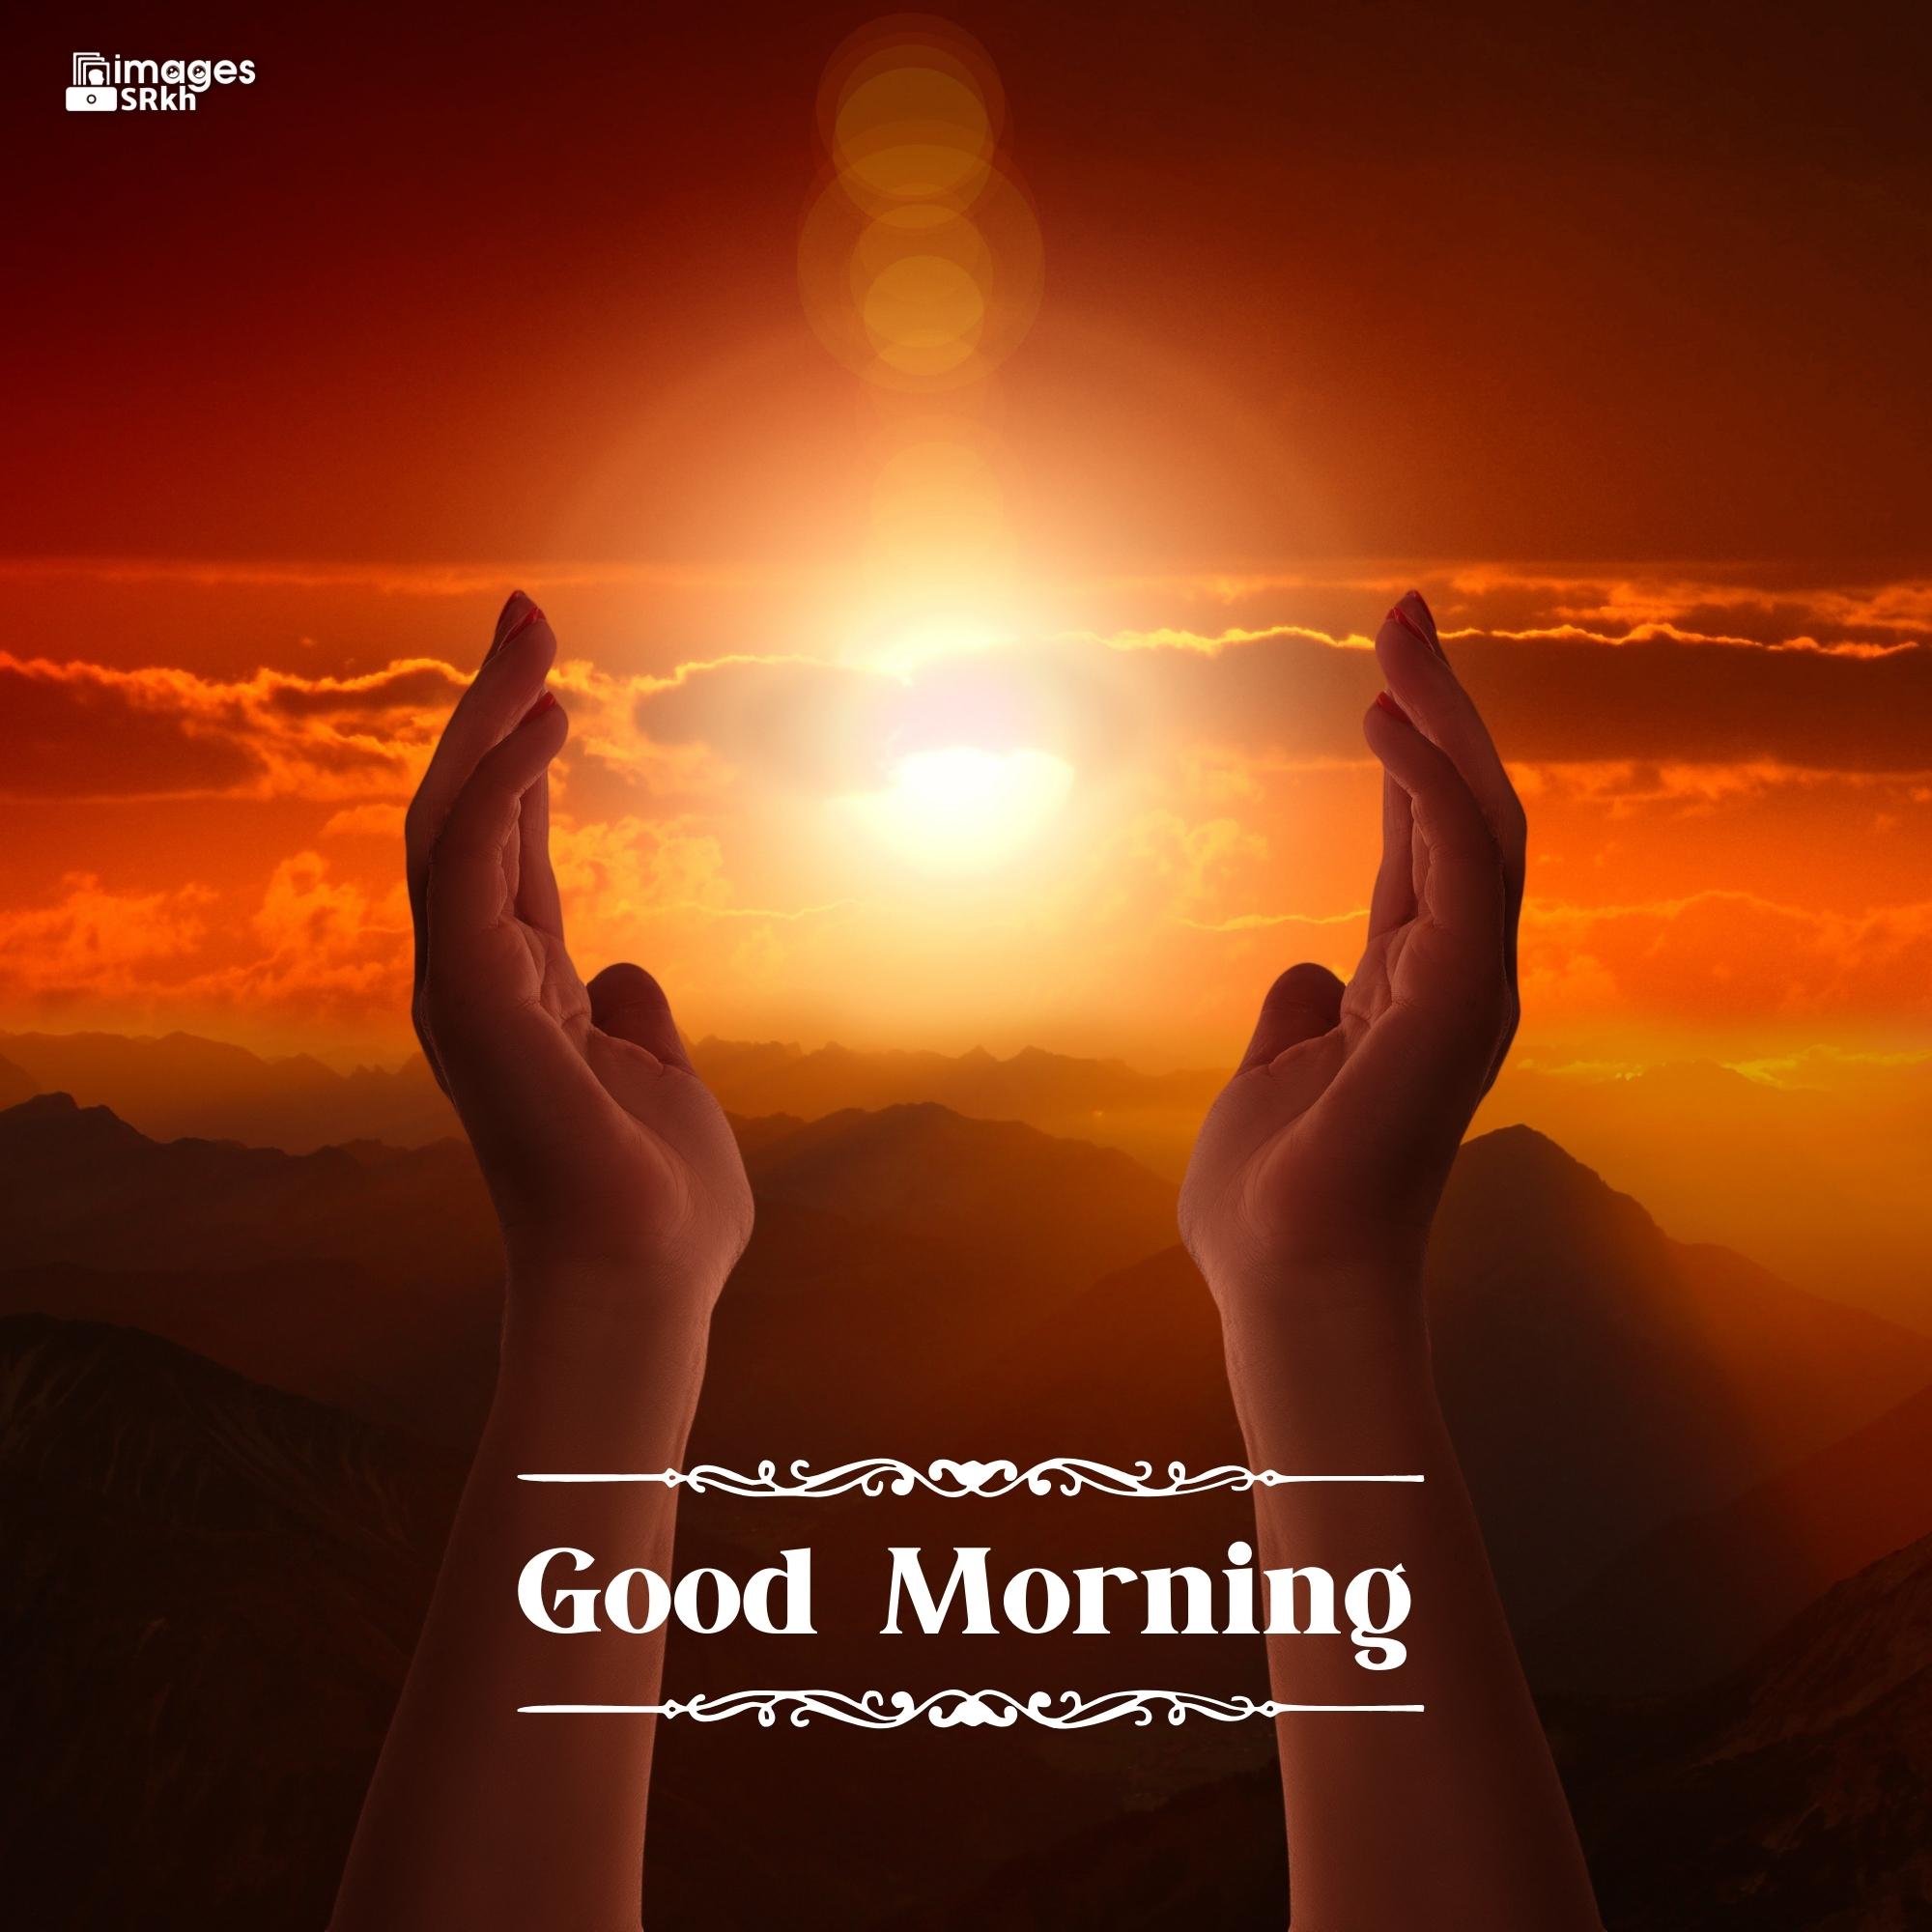 🔥 Good Morning Images For God full hd Download free - Images SRkh